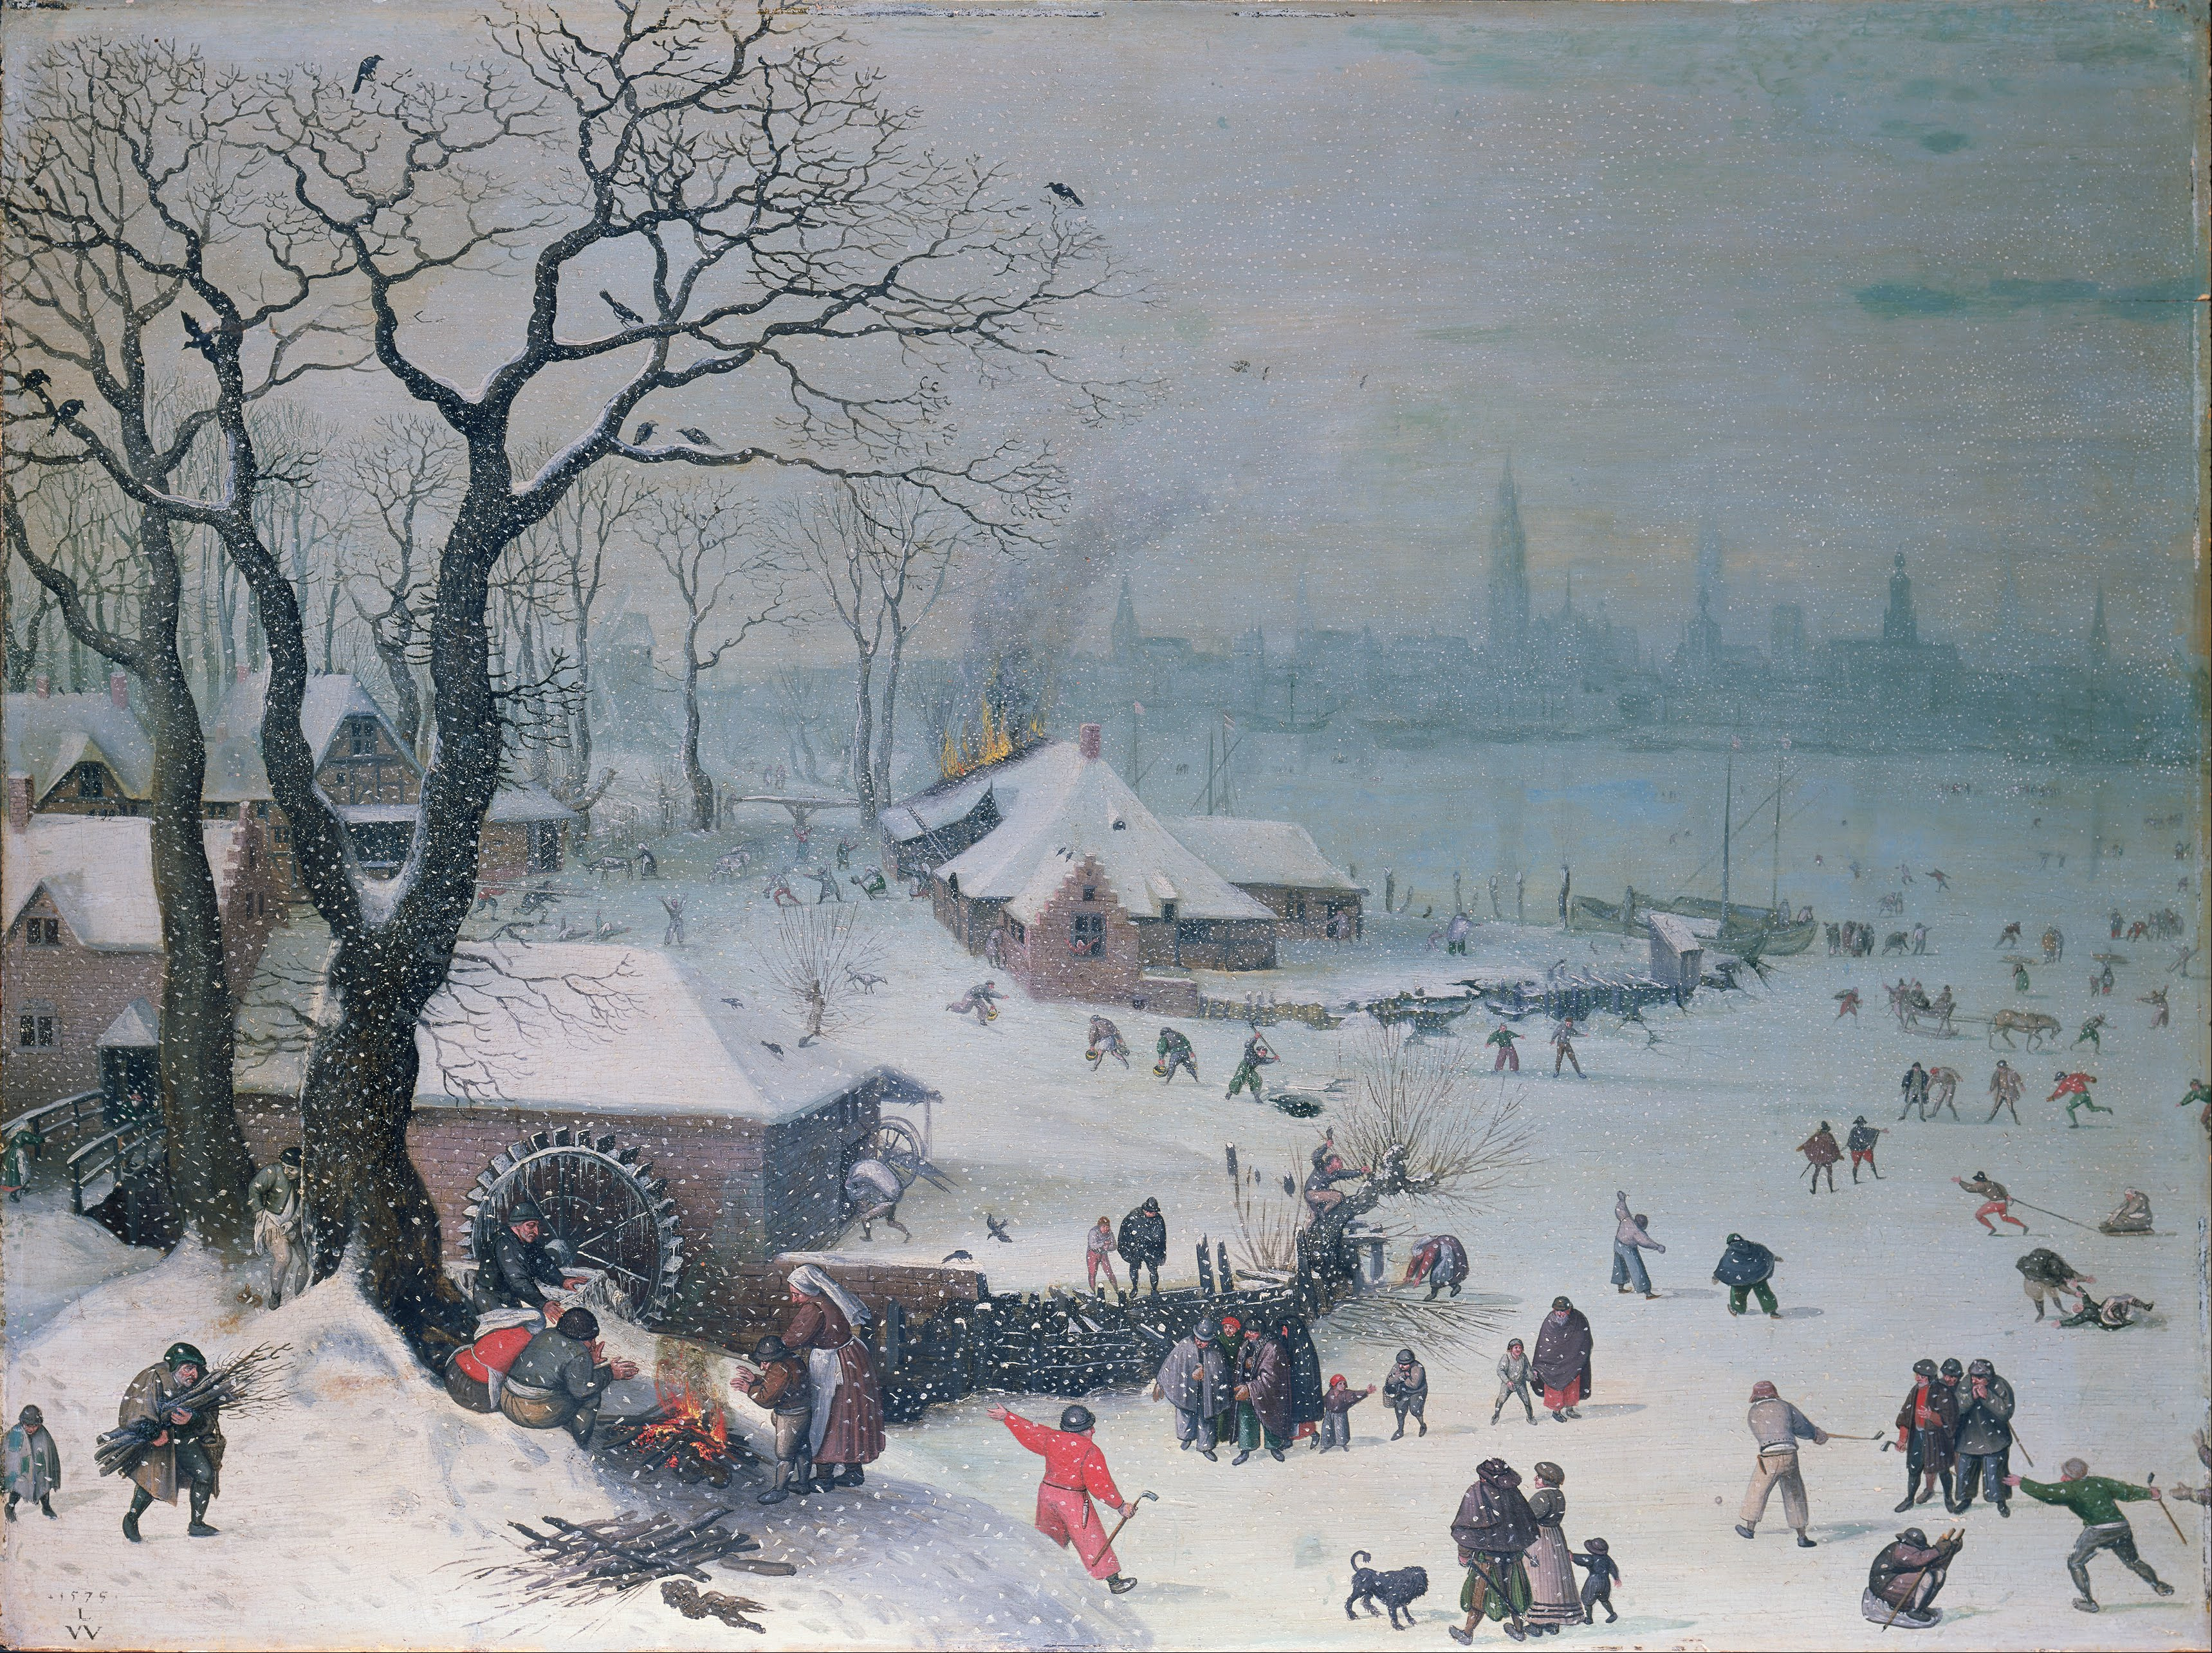 安特衛普附近的冬日雪景 by Lucas van Valckenborch - 1575 - 61 x 82 cm 